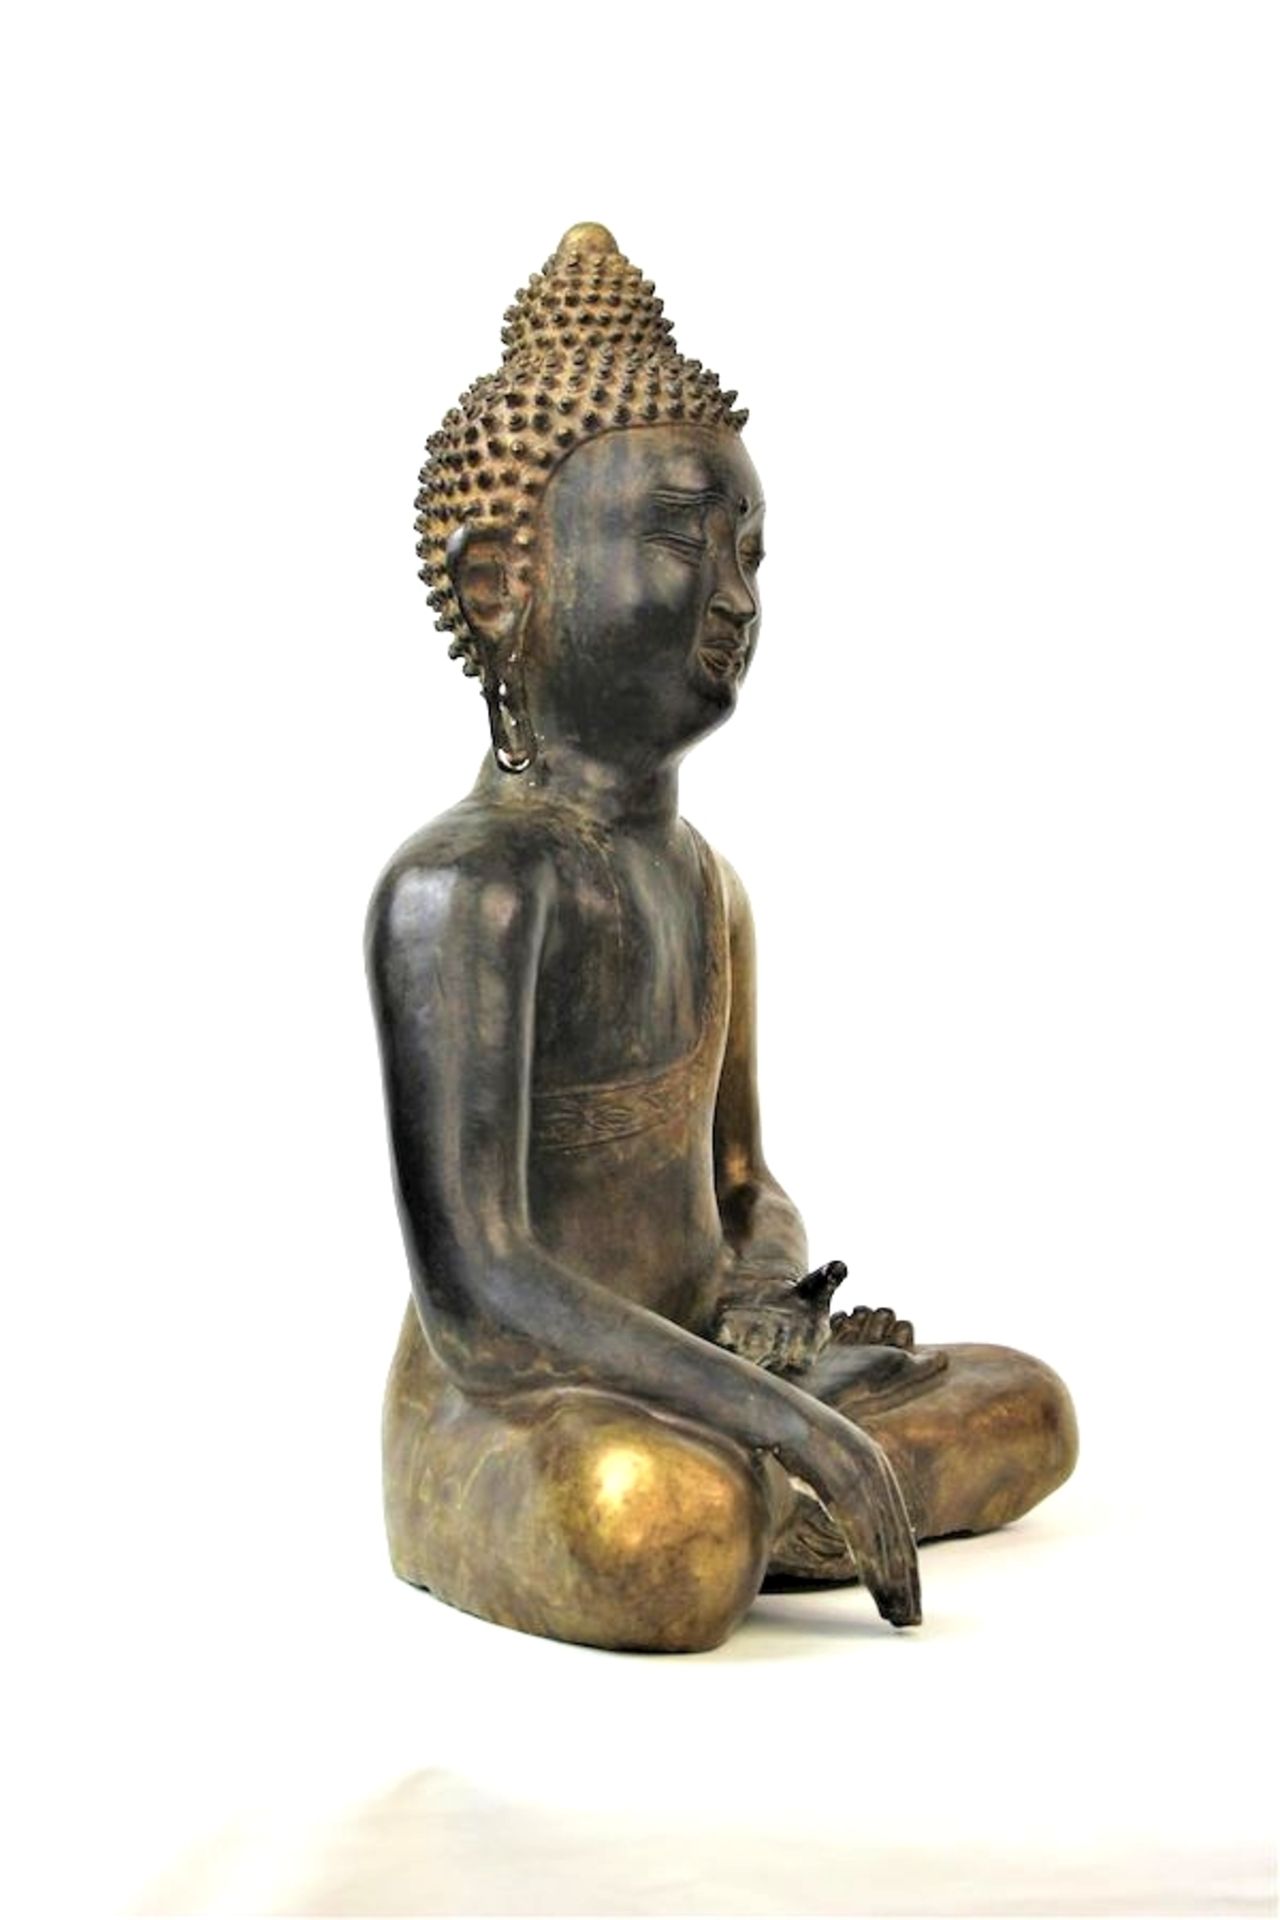 Großer Buddha Shakyamuni, Tibet wohl 16.Jhdt.Bronze, partiell feuervergoldet Boden neuzeitlich - Image 3 of 6